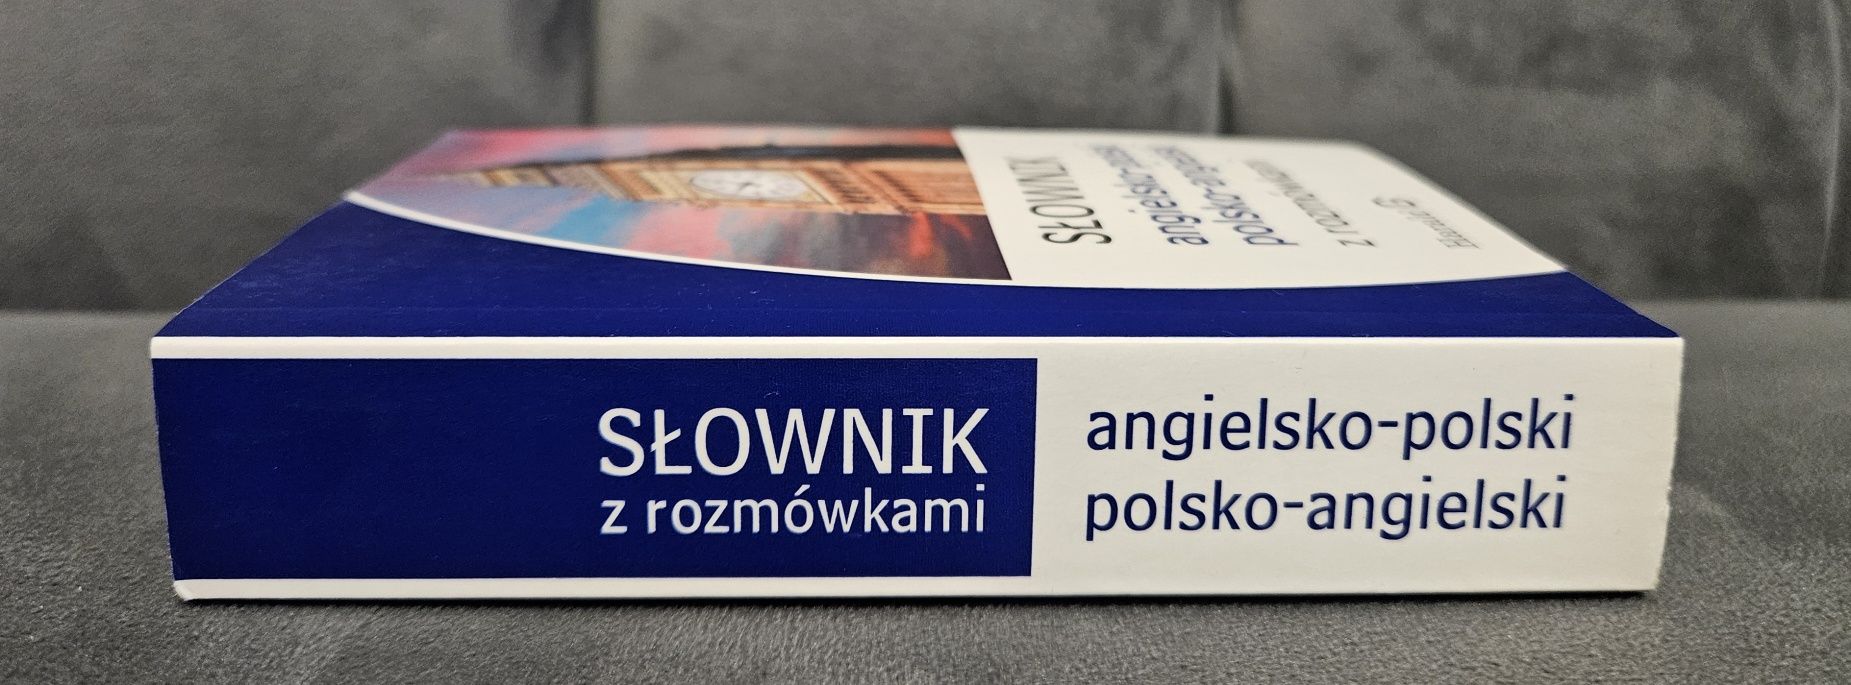 Słownik angielsko-polski polsko-angielski. Polecam i zapraszam !!!